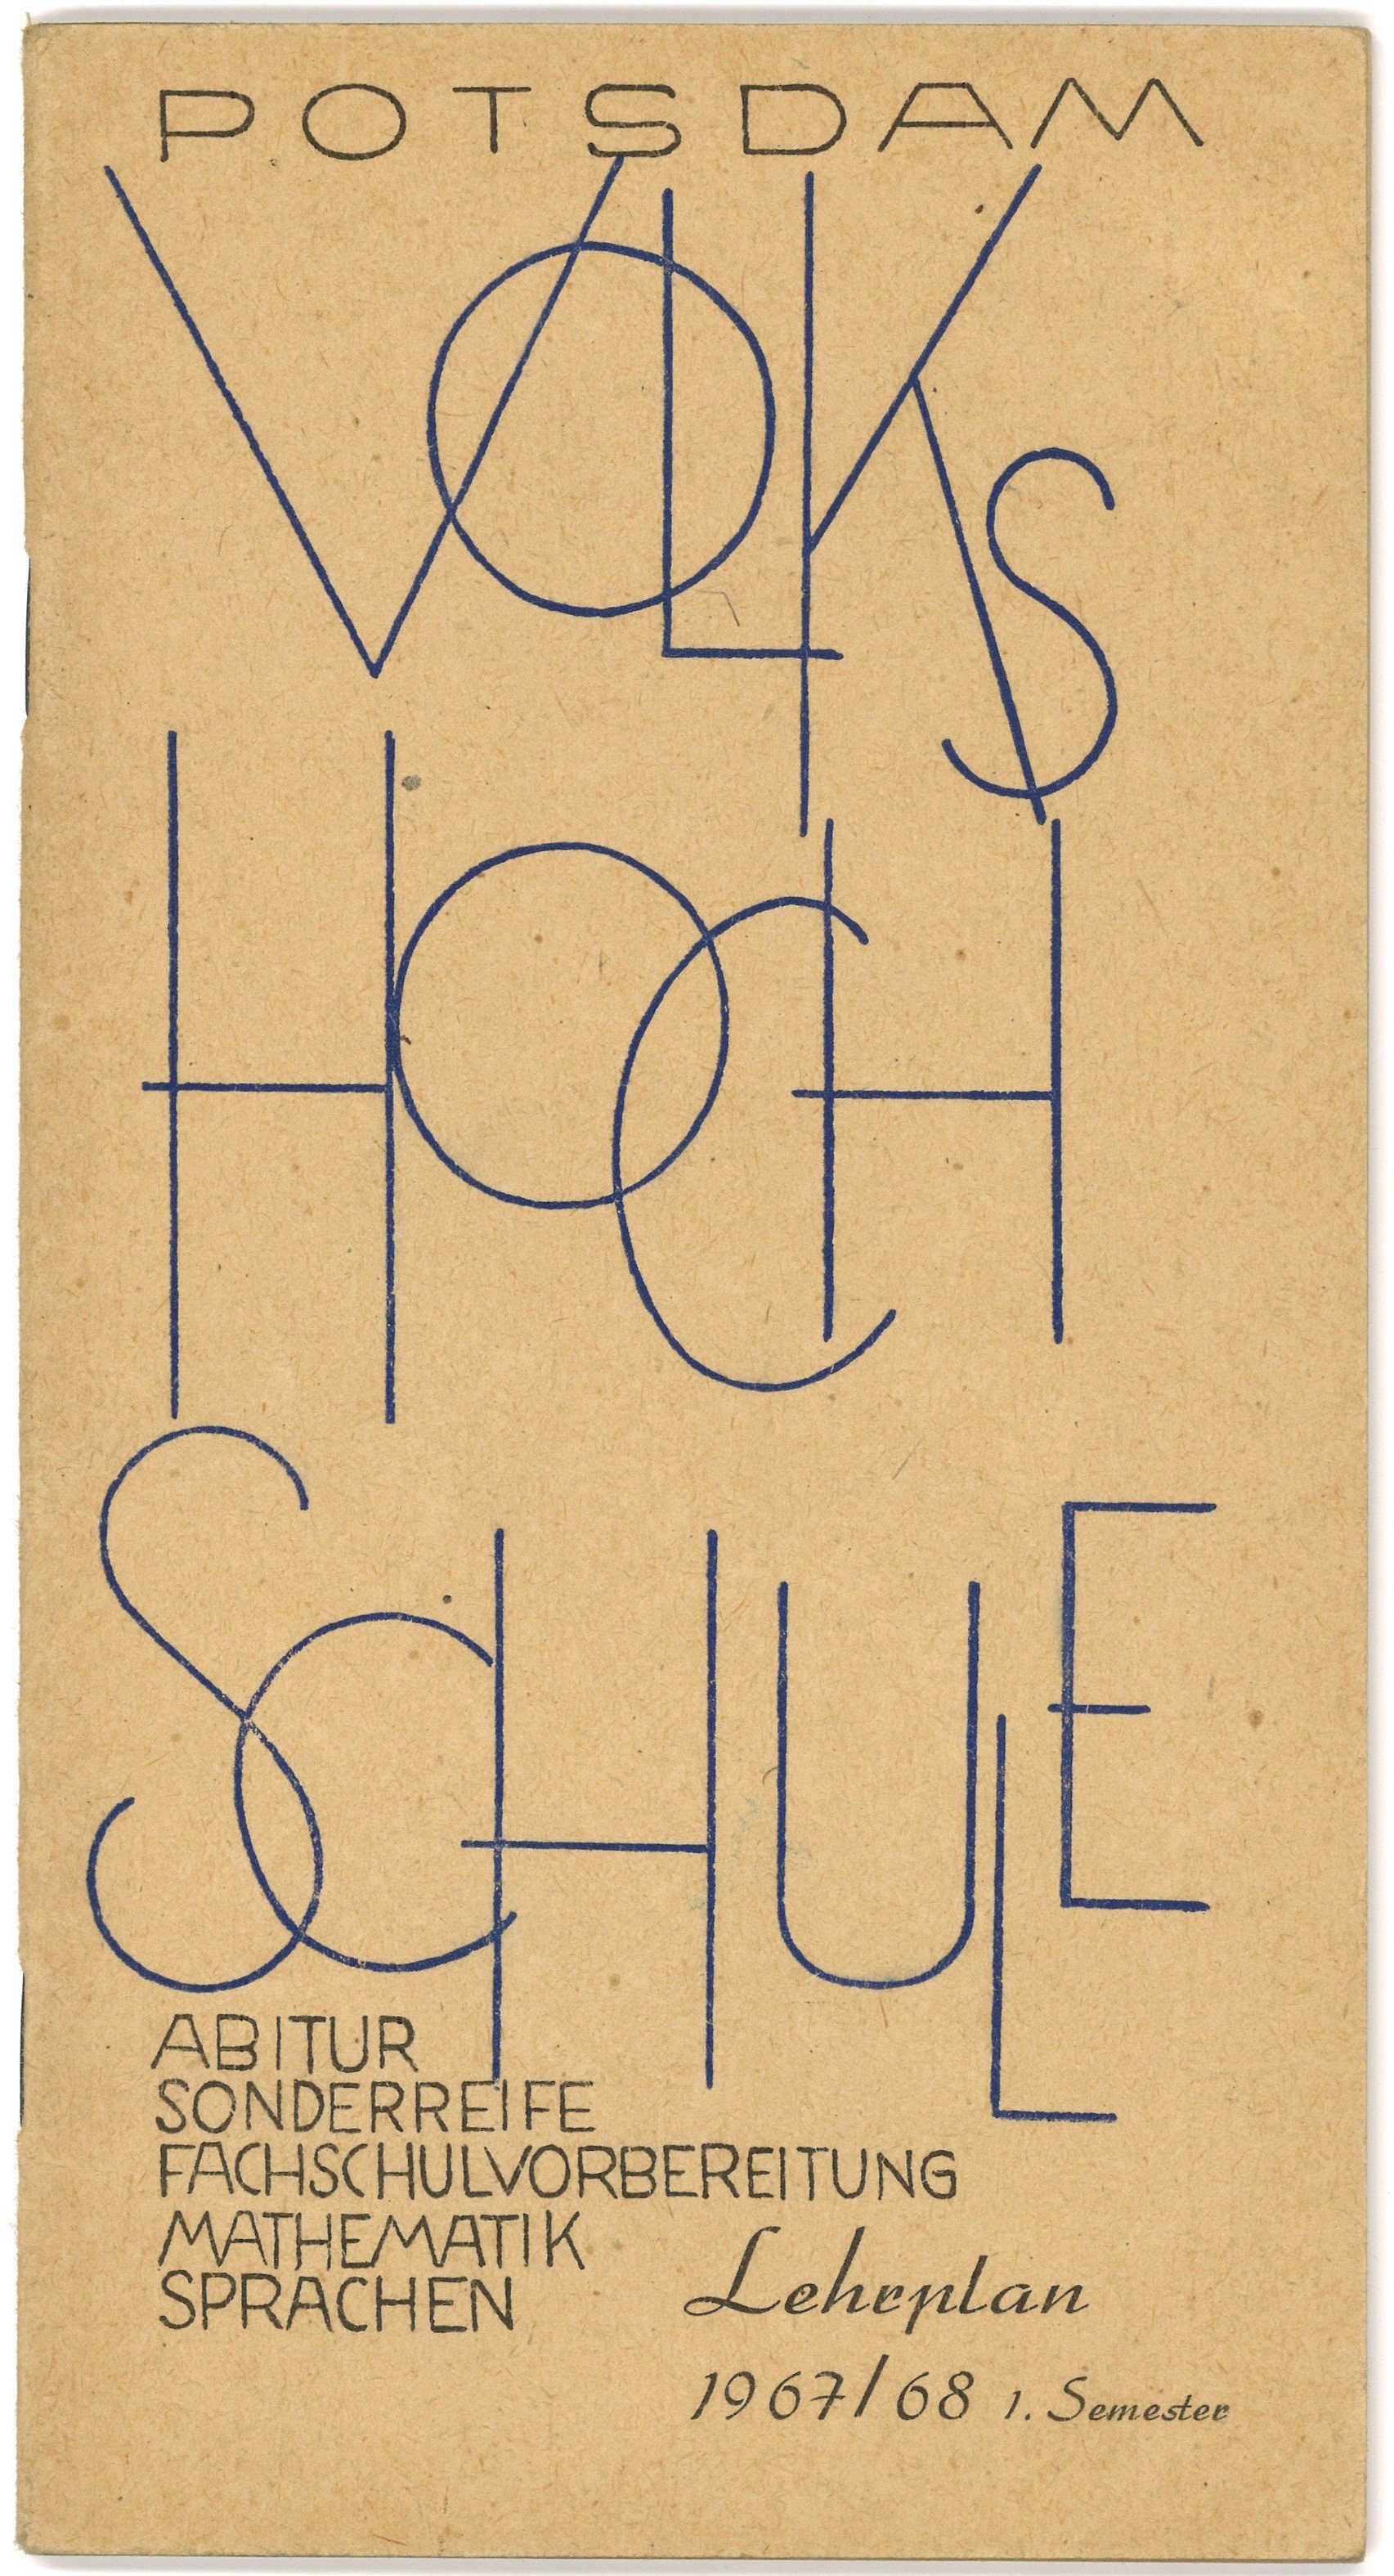 Lehrplan der Volkshochschule Potsdam 1967/68 (Landesgeschichtliche Vereinigung für die Mark Brandenburg e.V., Archiv CC BY)